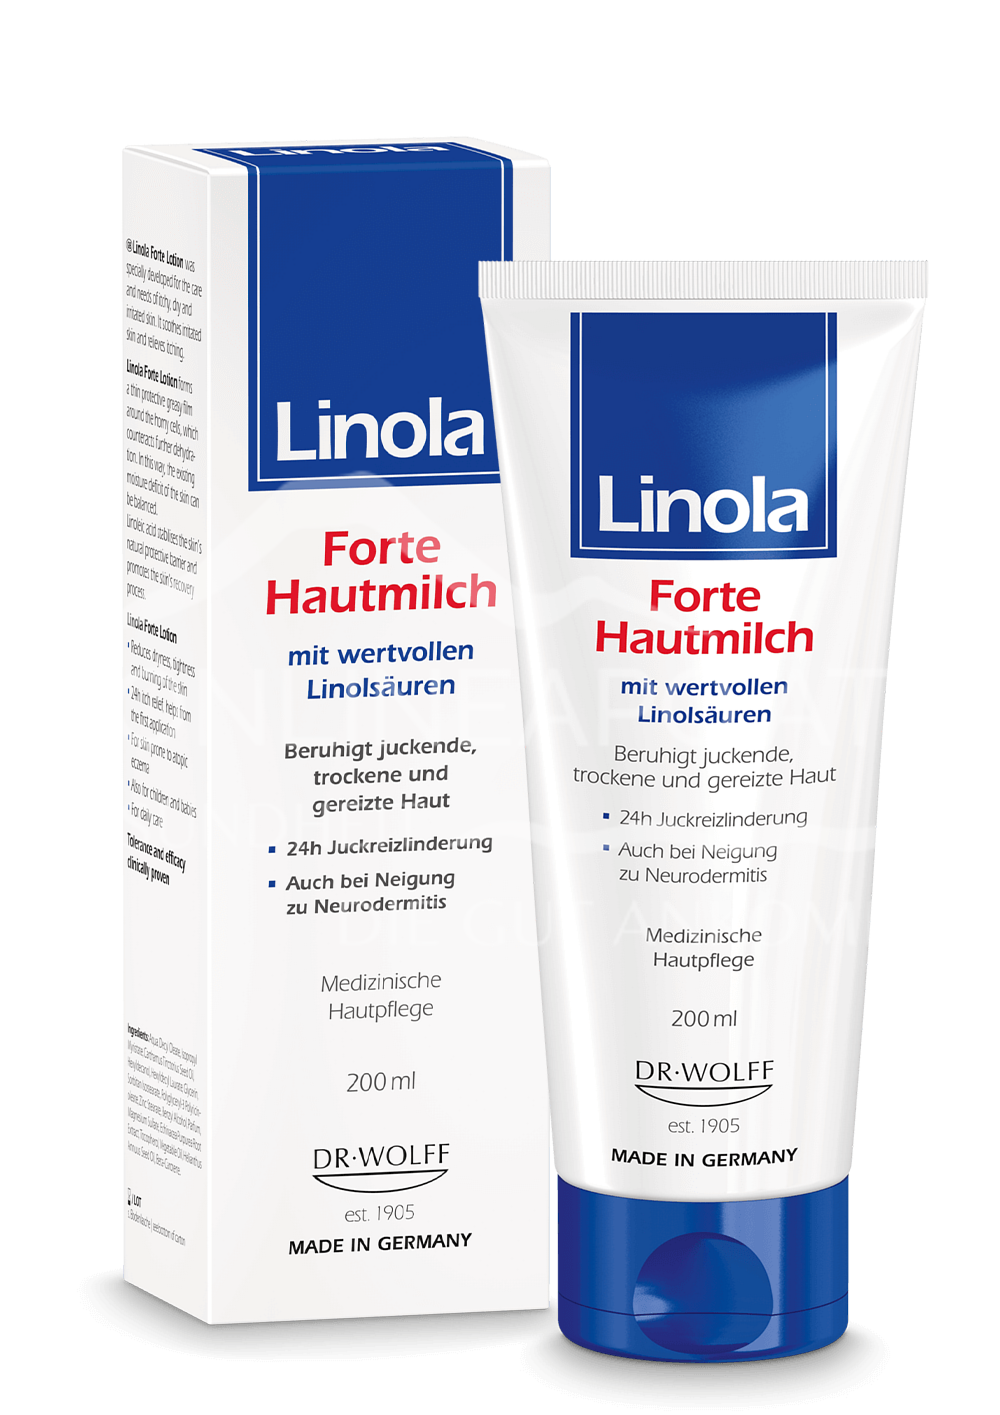 Linola Forte Hautmilch